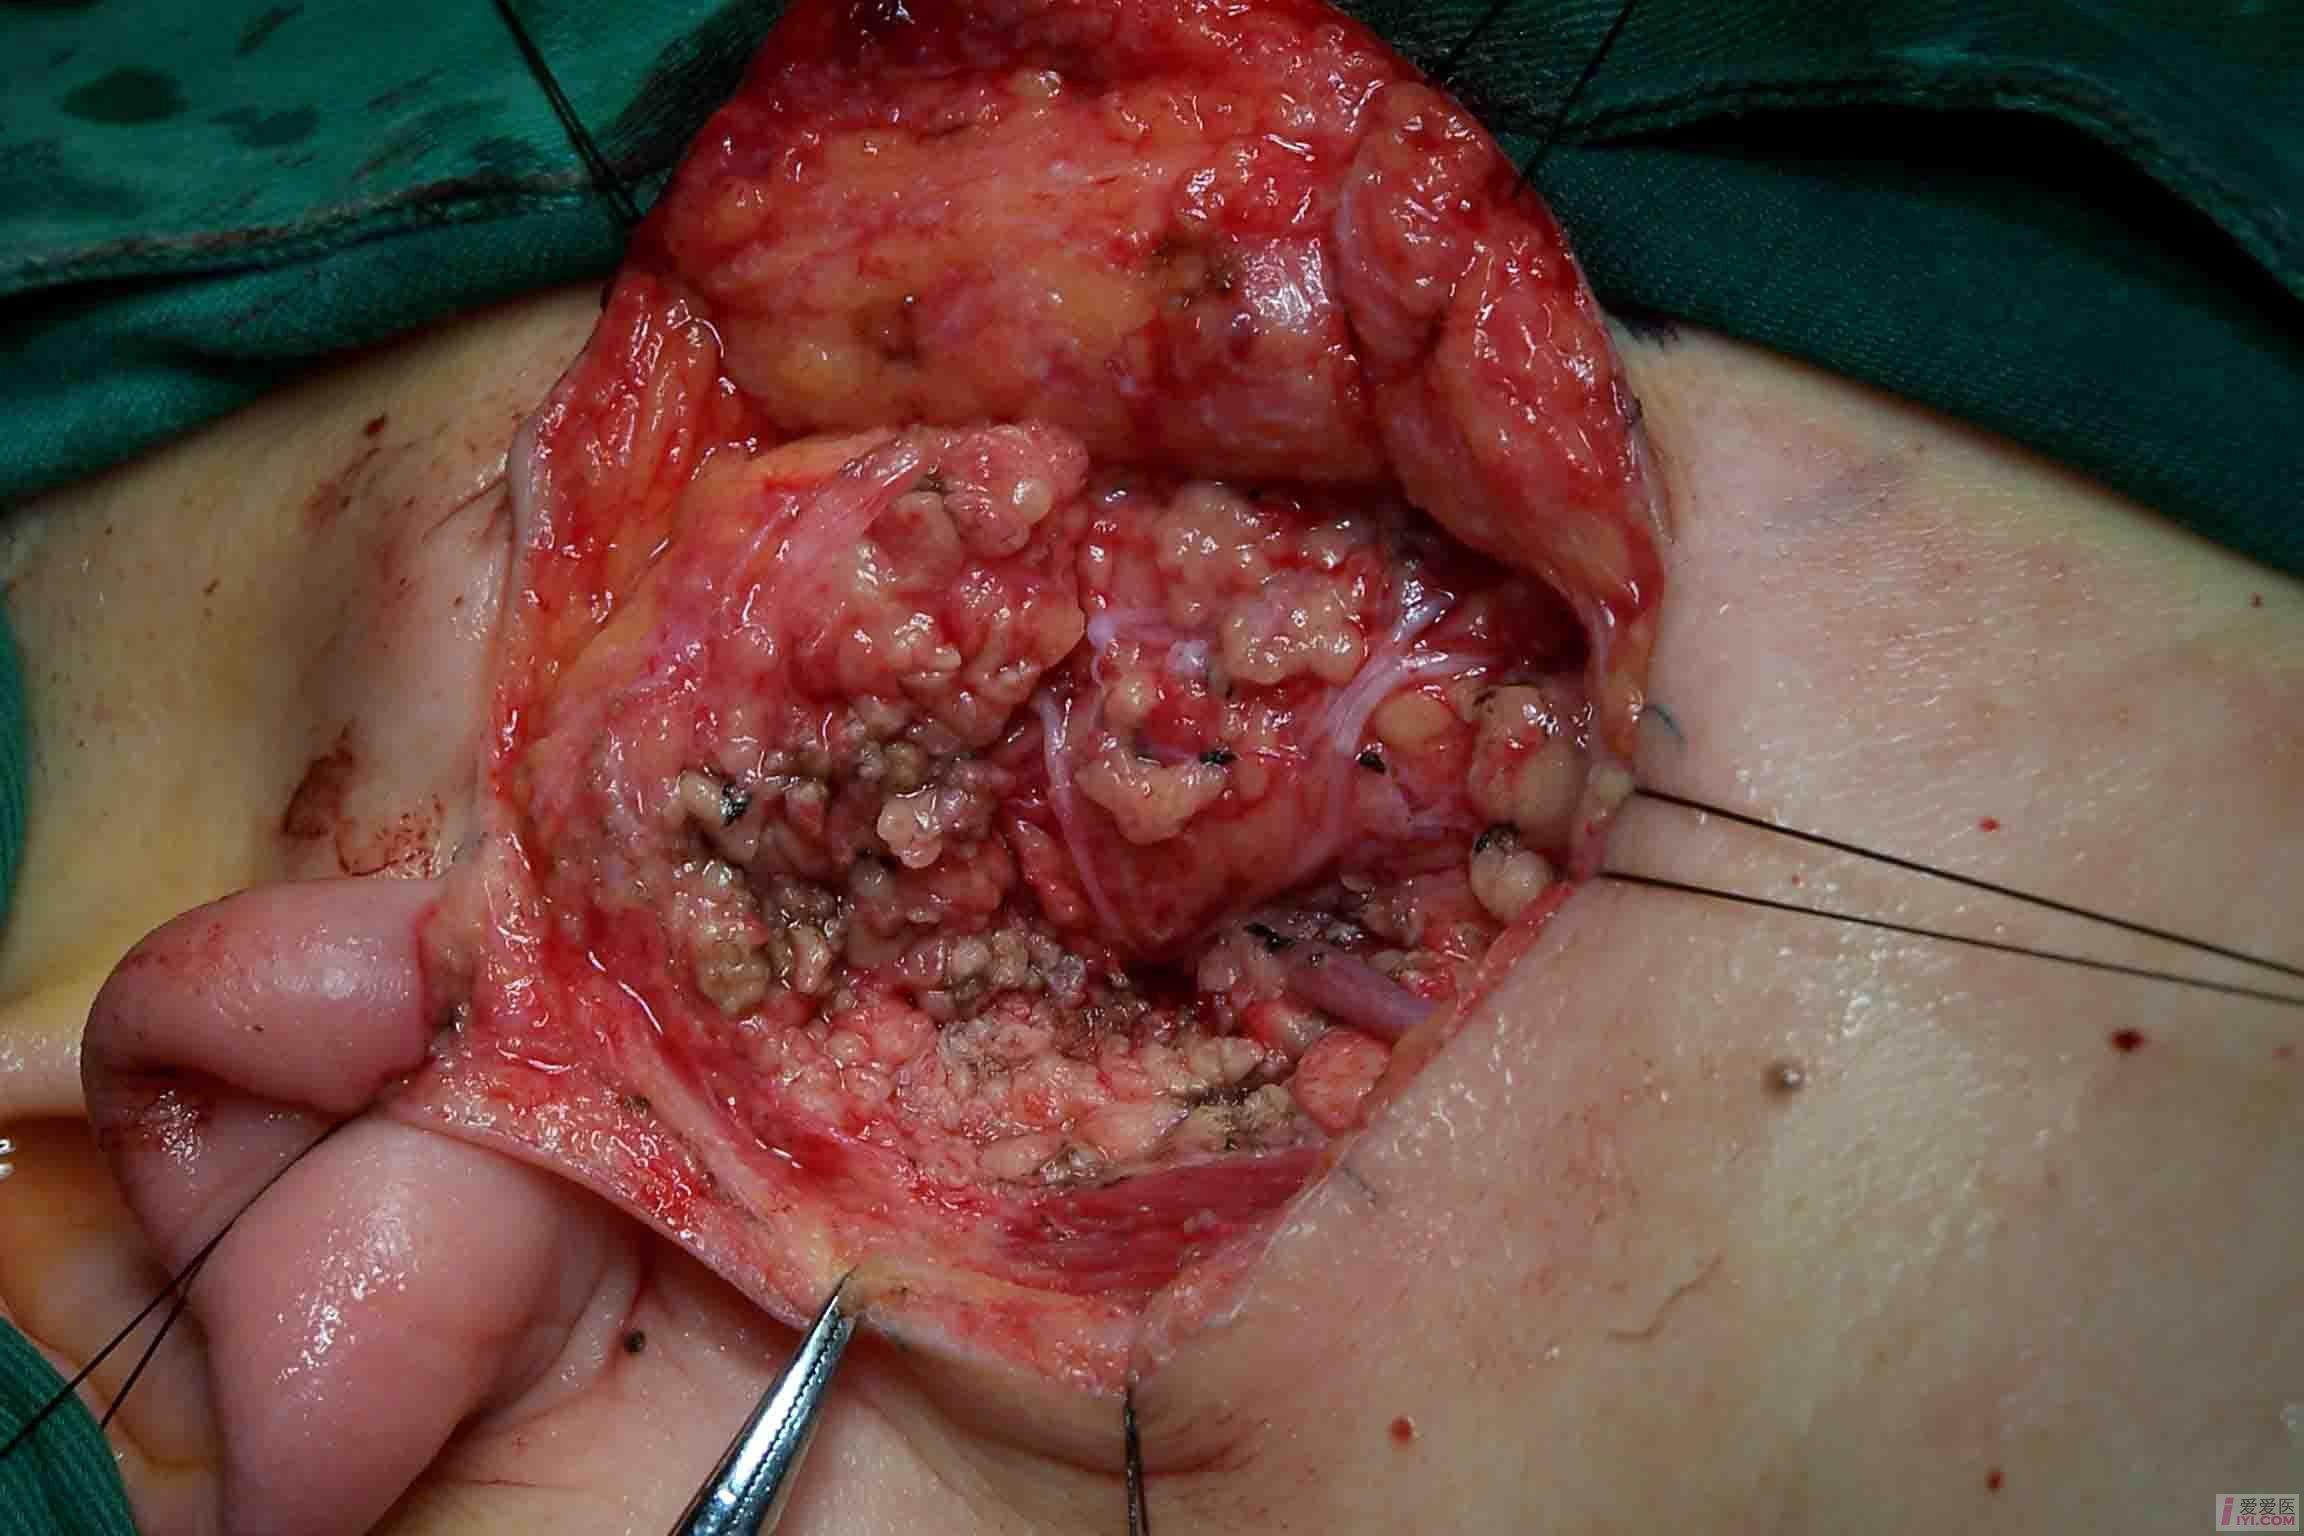 腮腺混合瘤恶性图片